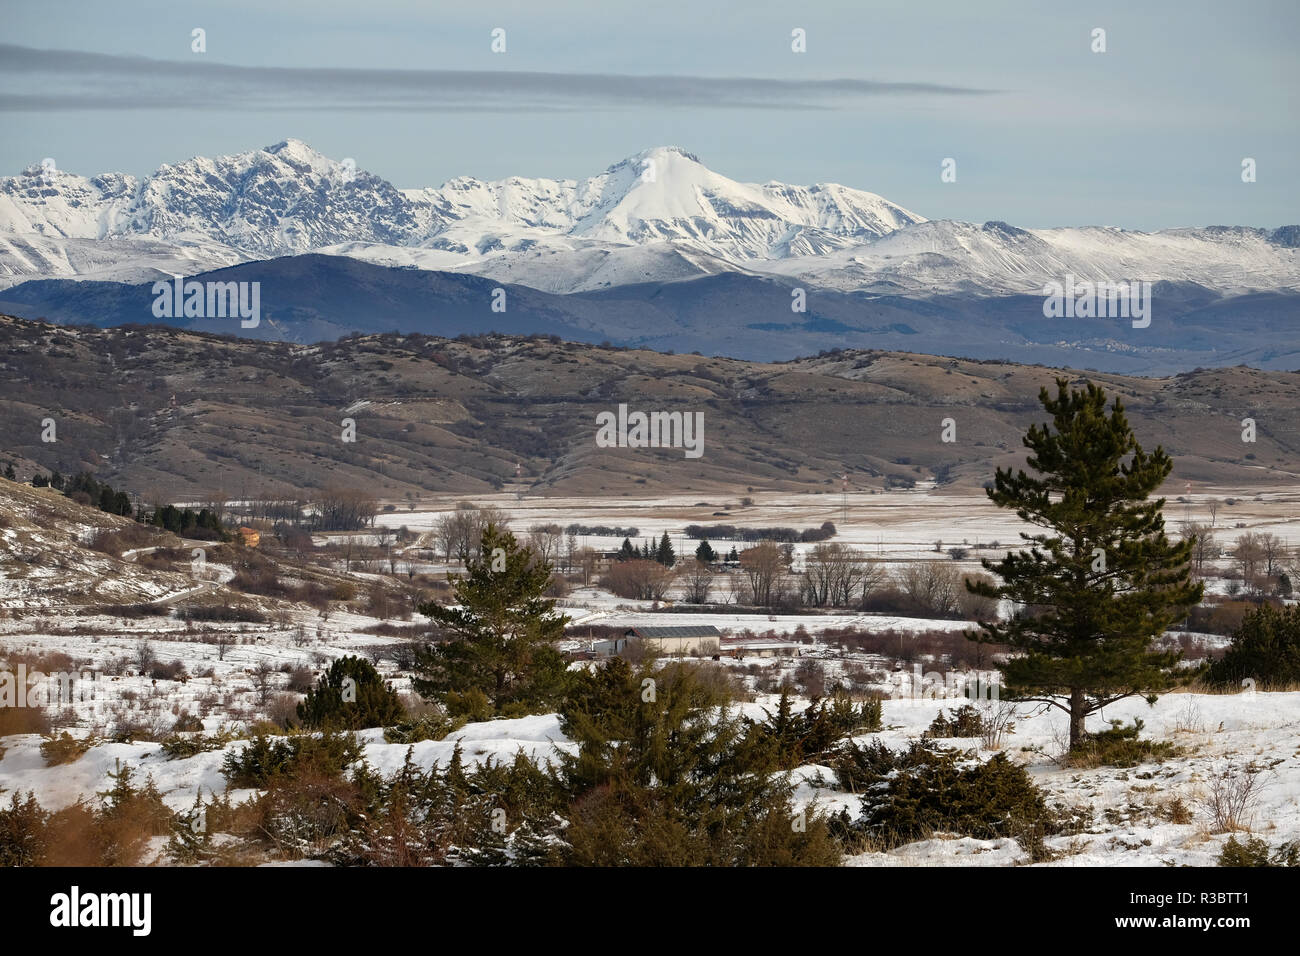 Paysage de neige naturelle avec les montagnes de Gran Sasso en arrière-plan, Rocca di Cambio, Abruzzo, Italie. Banque D'Images